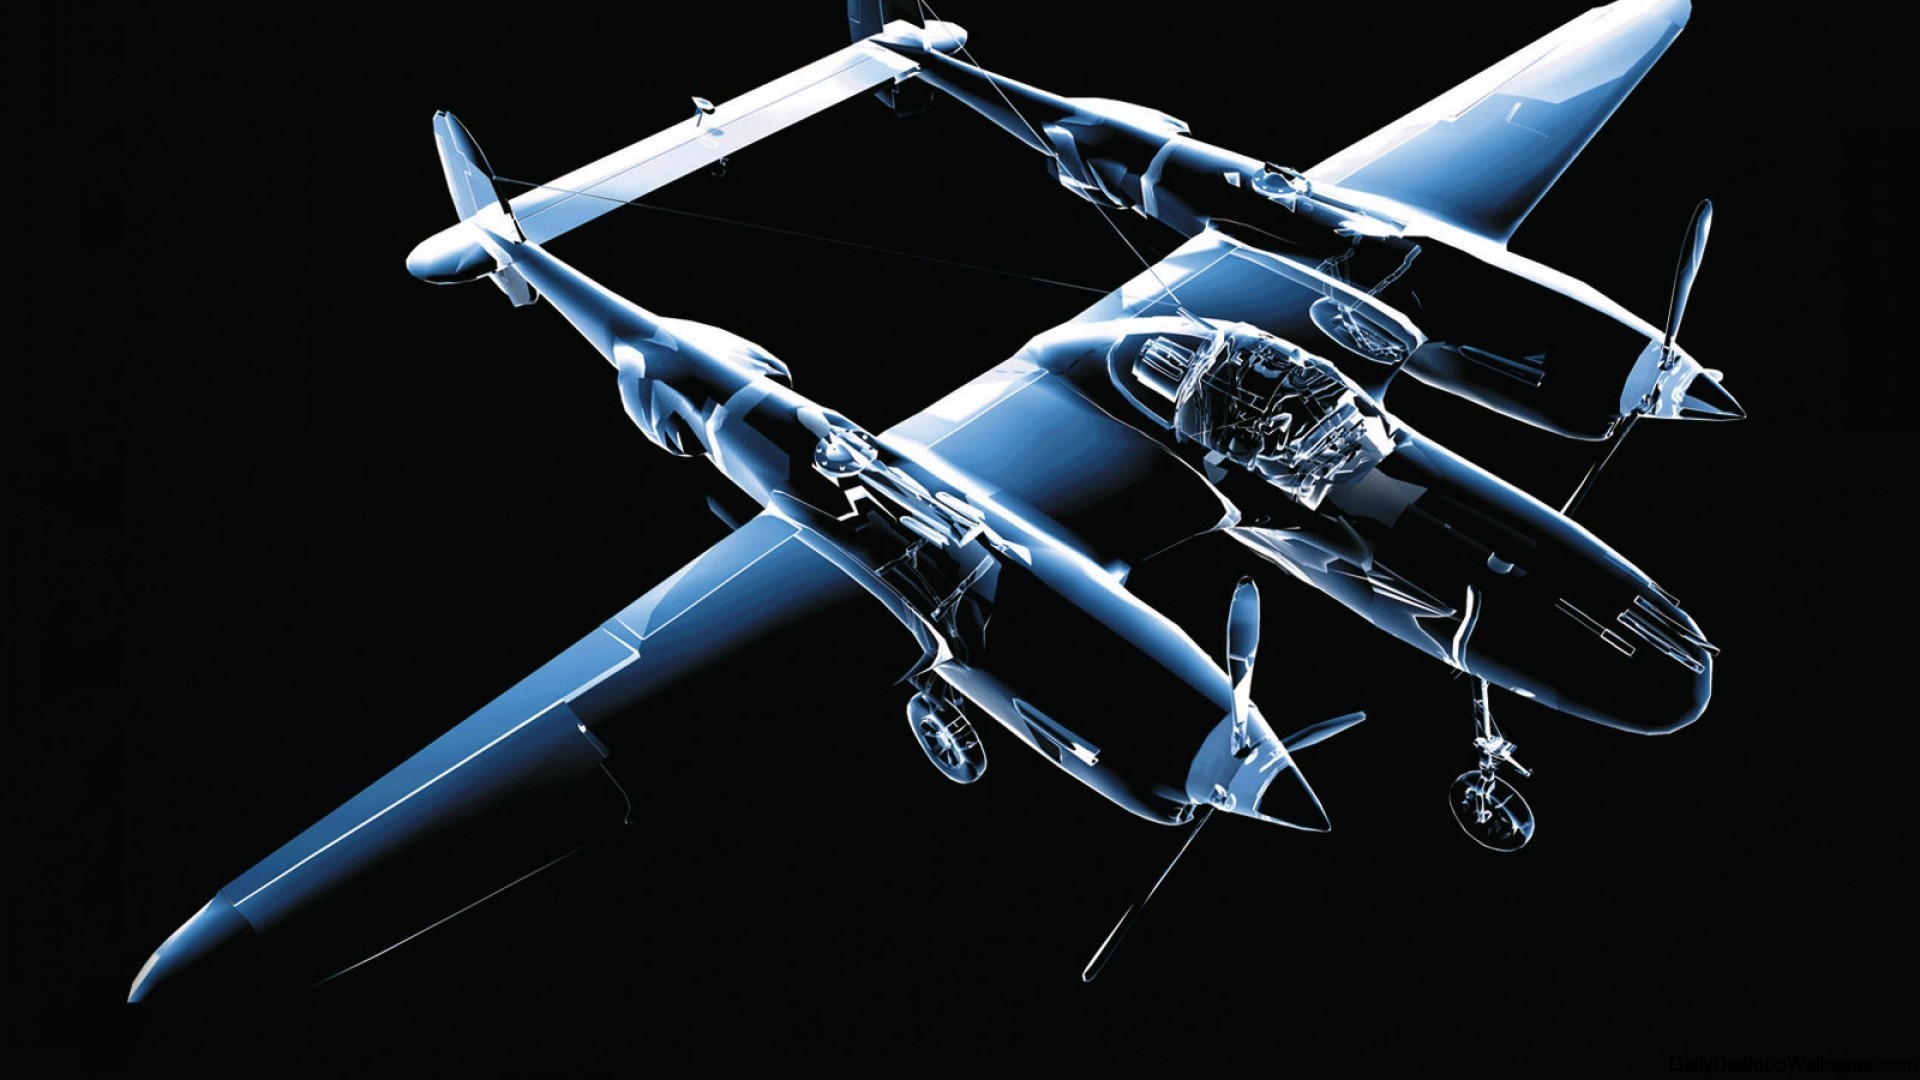 fond d'écran avion 3d,lockheed p 38 foudre,avion,véhicule,avion,avion militaire